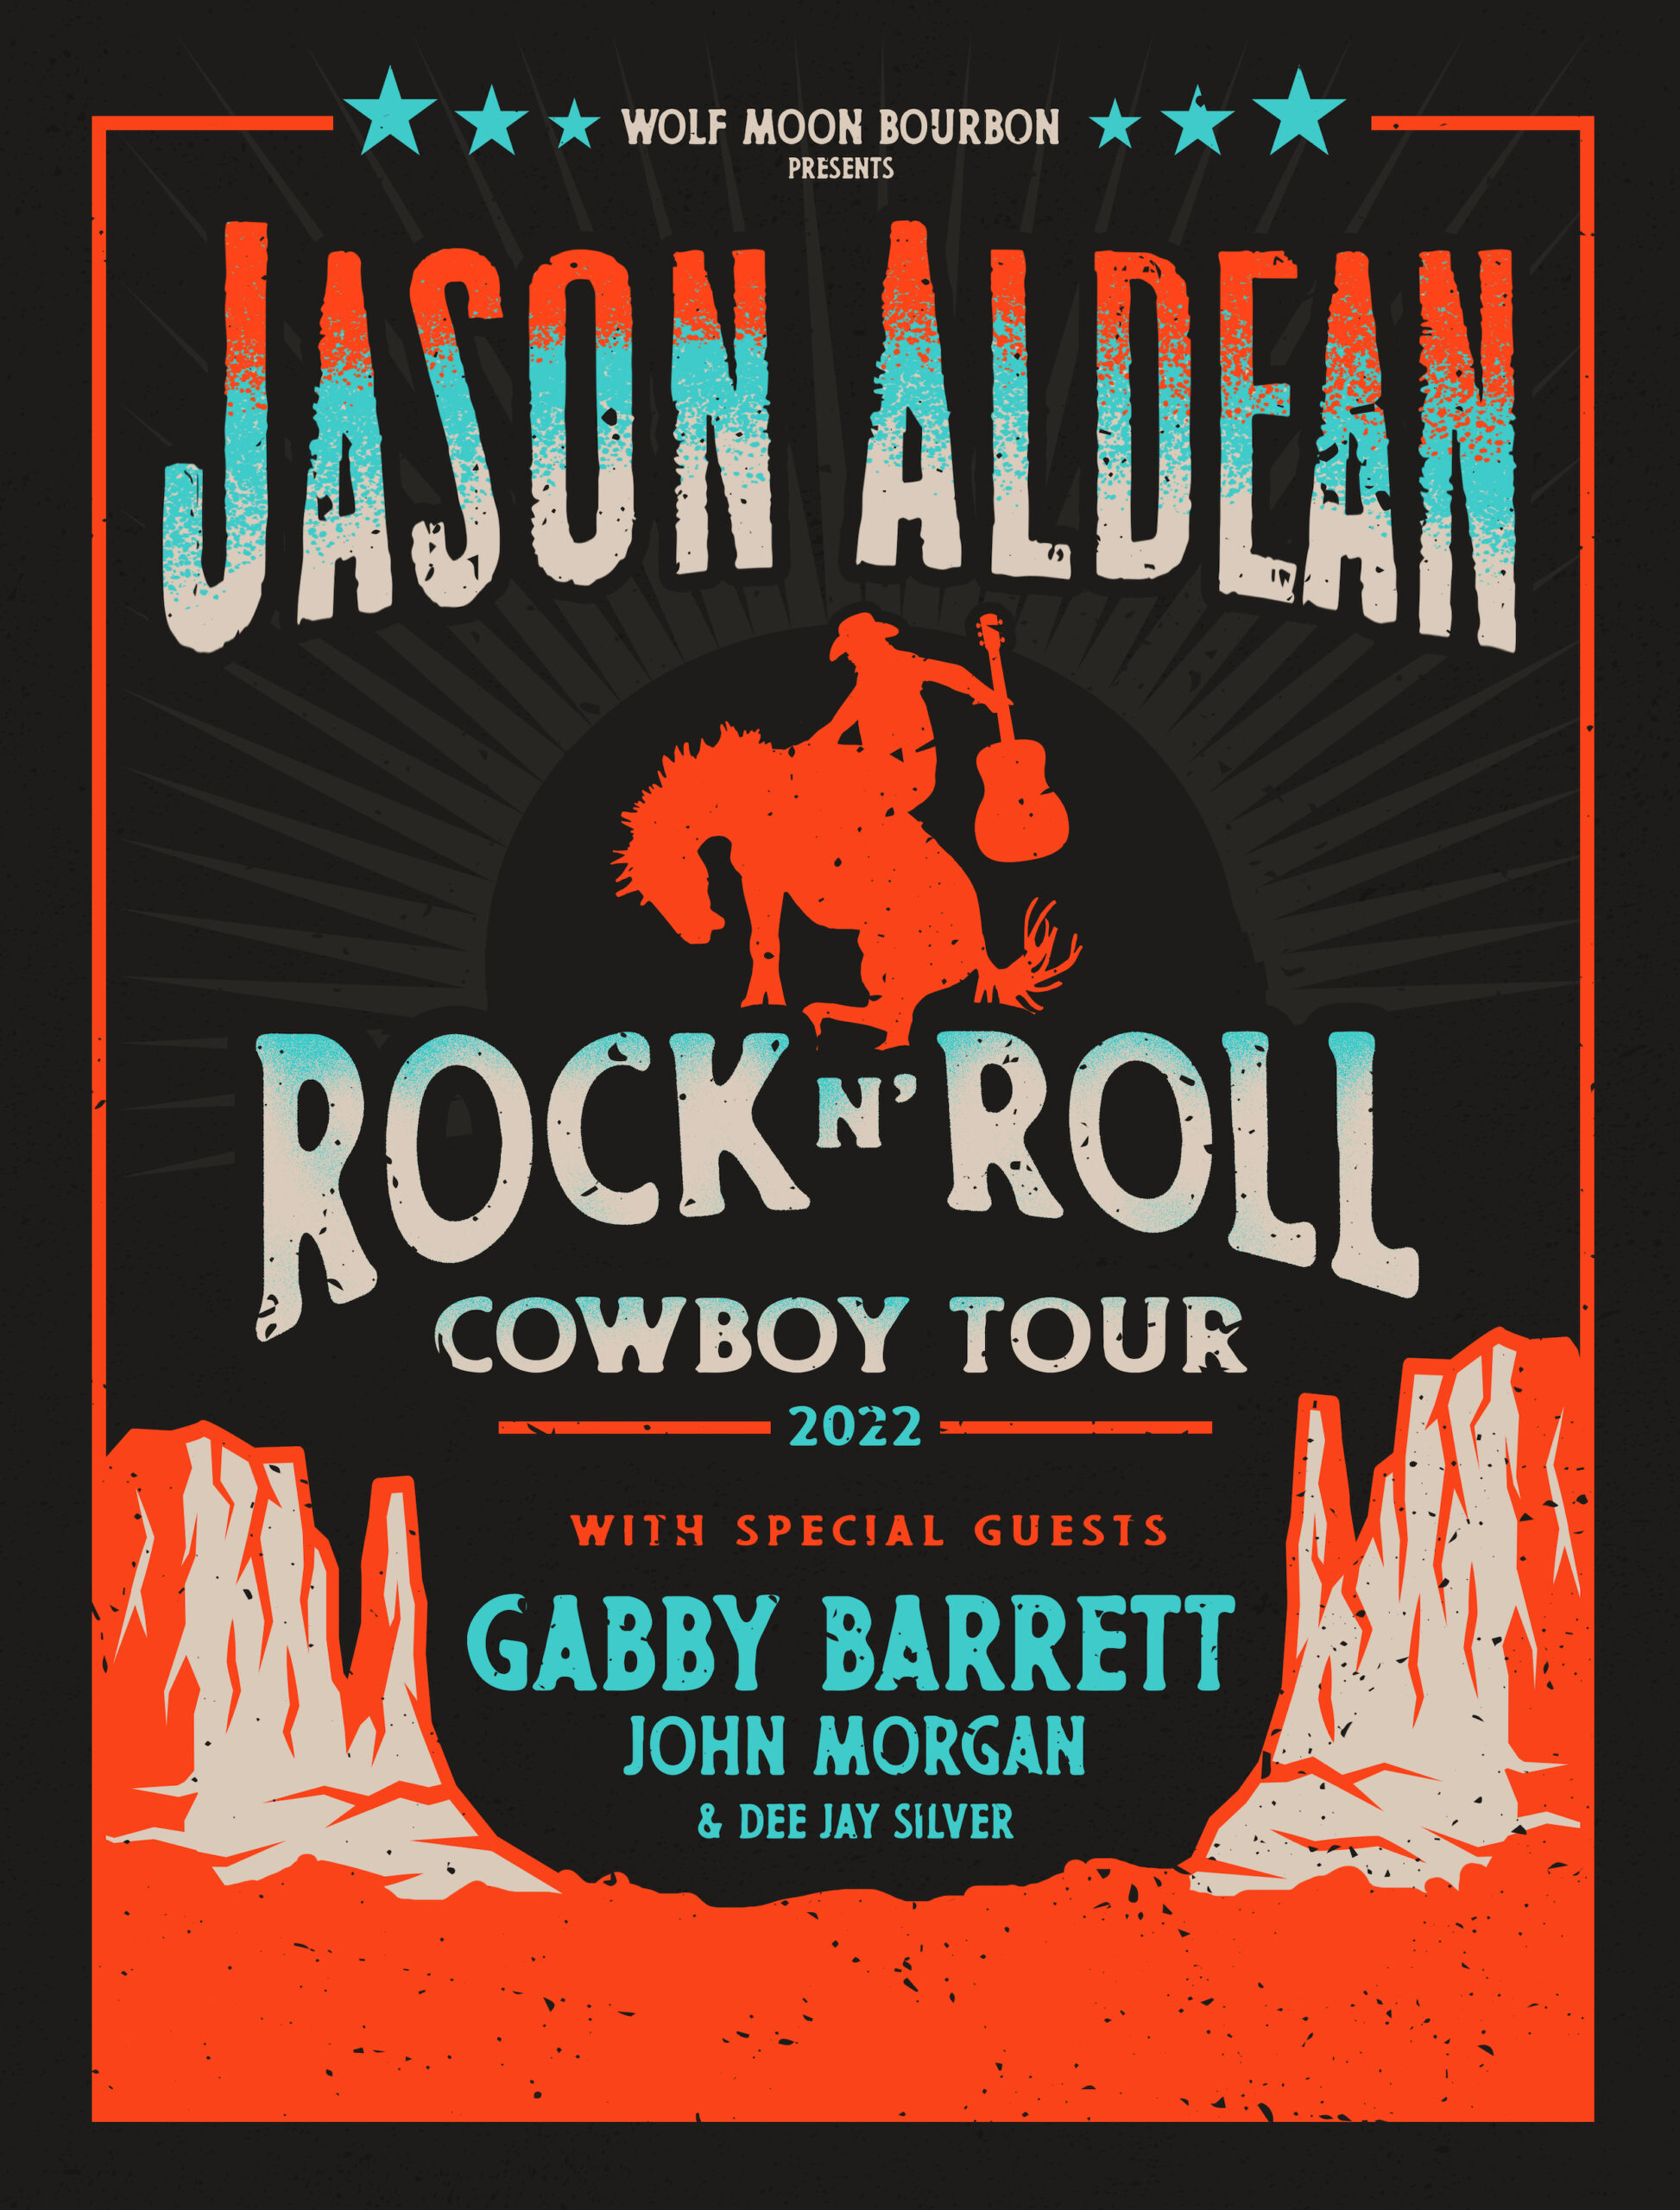 ROCK N' ROLL COWBOY TOUR KICKS OFF IN JULY Jason Aldean